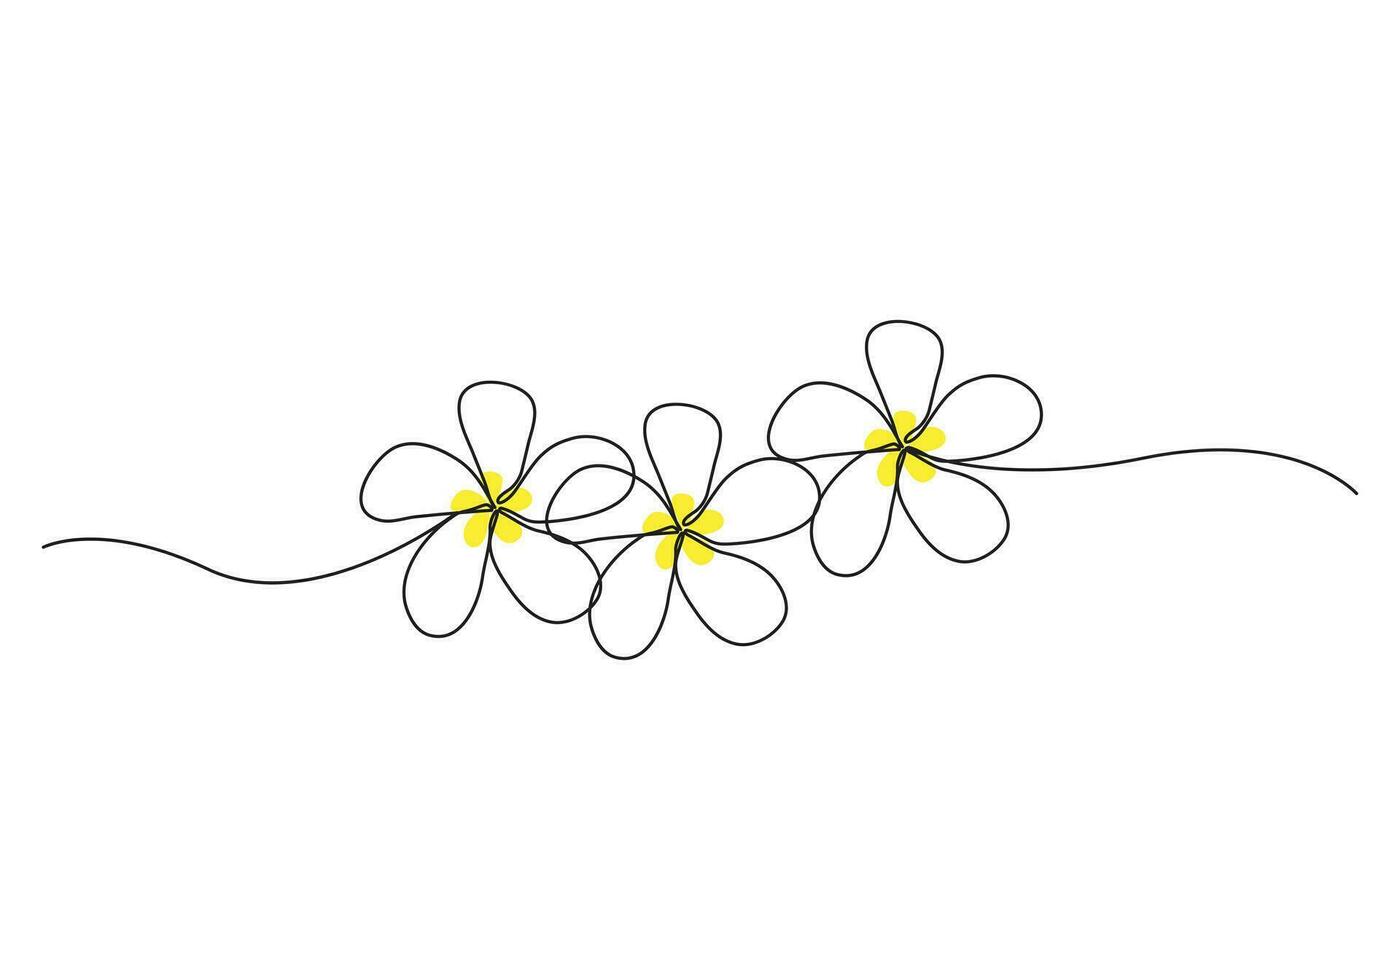 plumeria flores en continuo uno línea Arte dibujo. frangipani florecer. vector ilustración aislado en blanco.